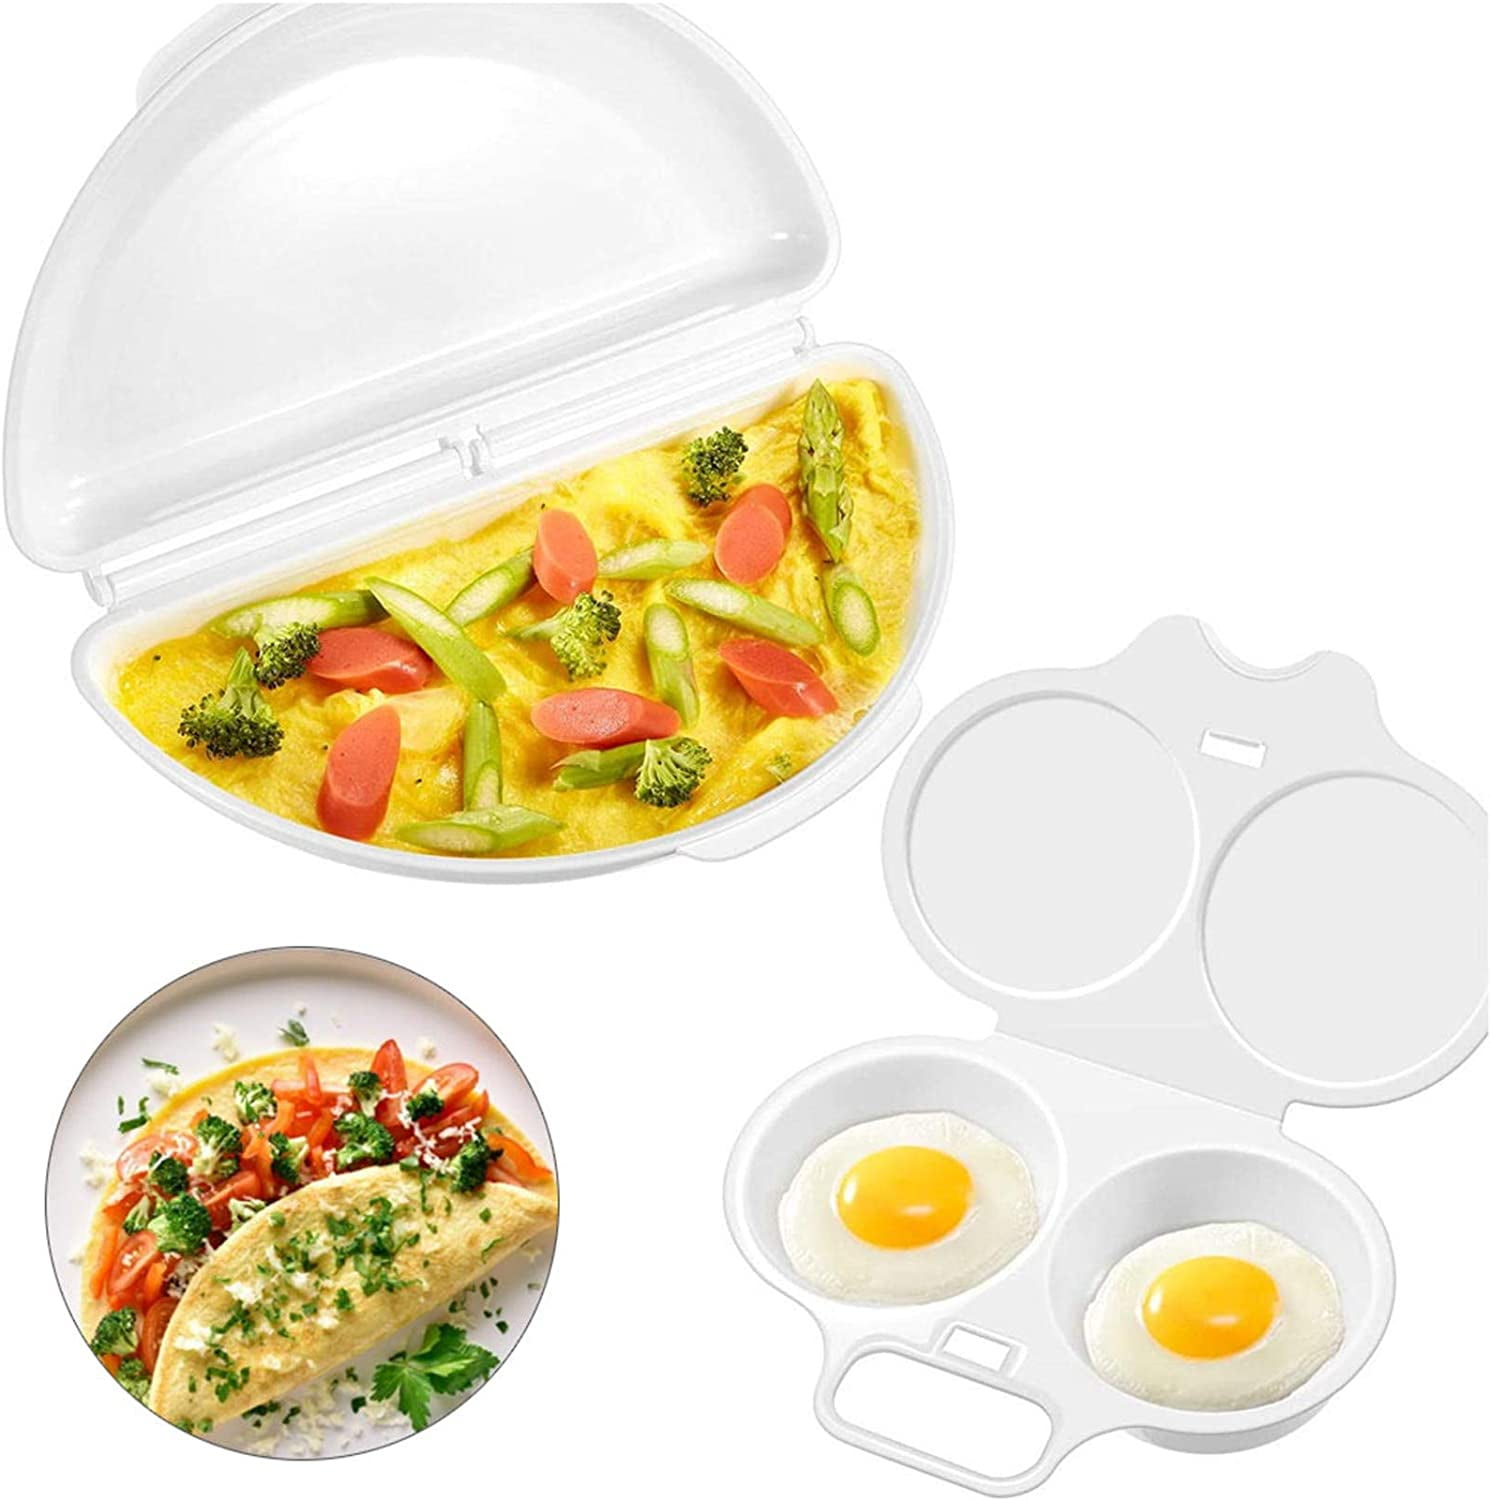 Ovens Two Egg Microwave Omelet Pan Home Omelette Pan Maker Egg Poachers 